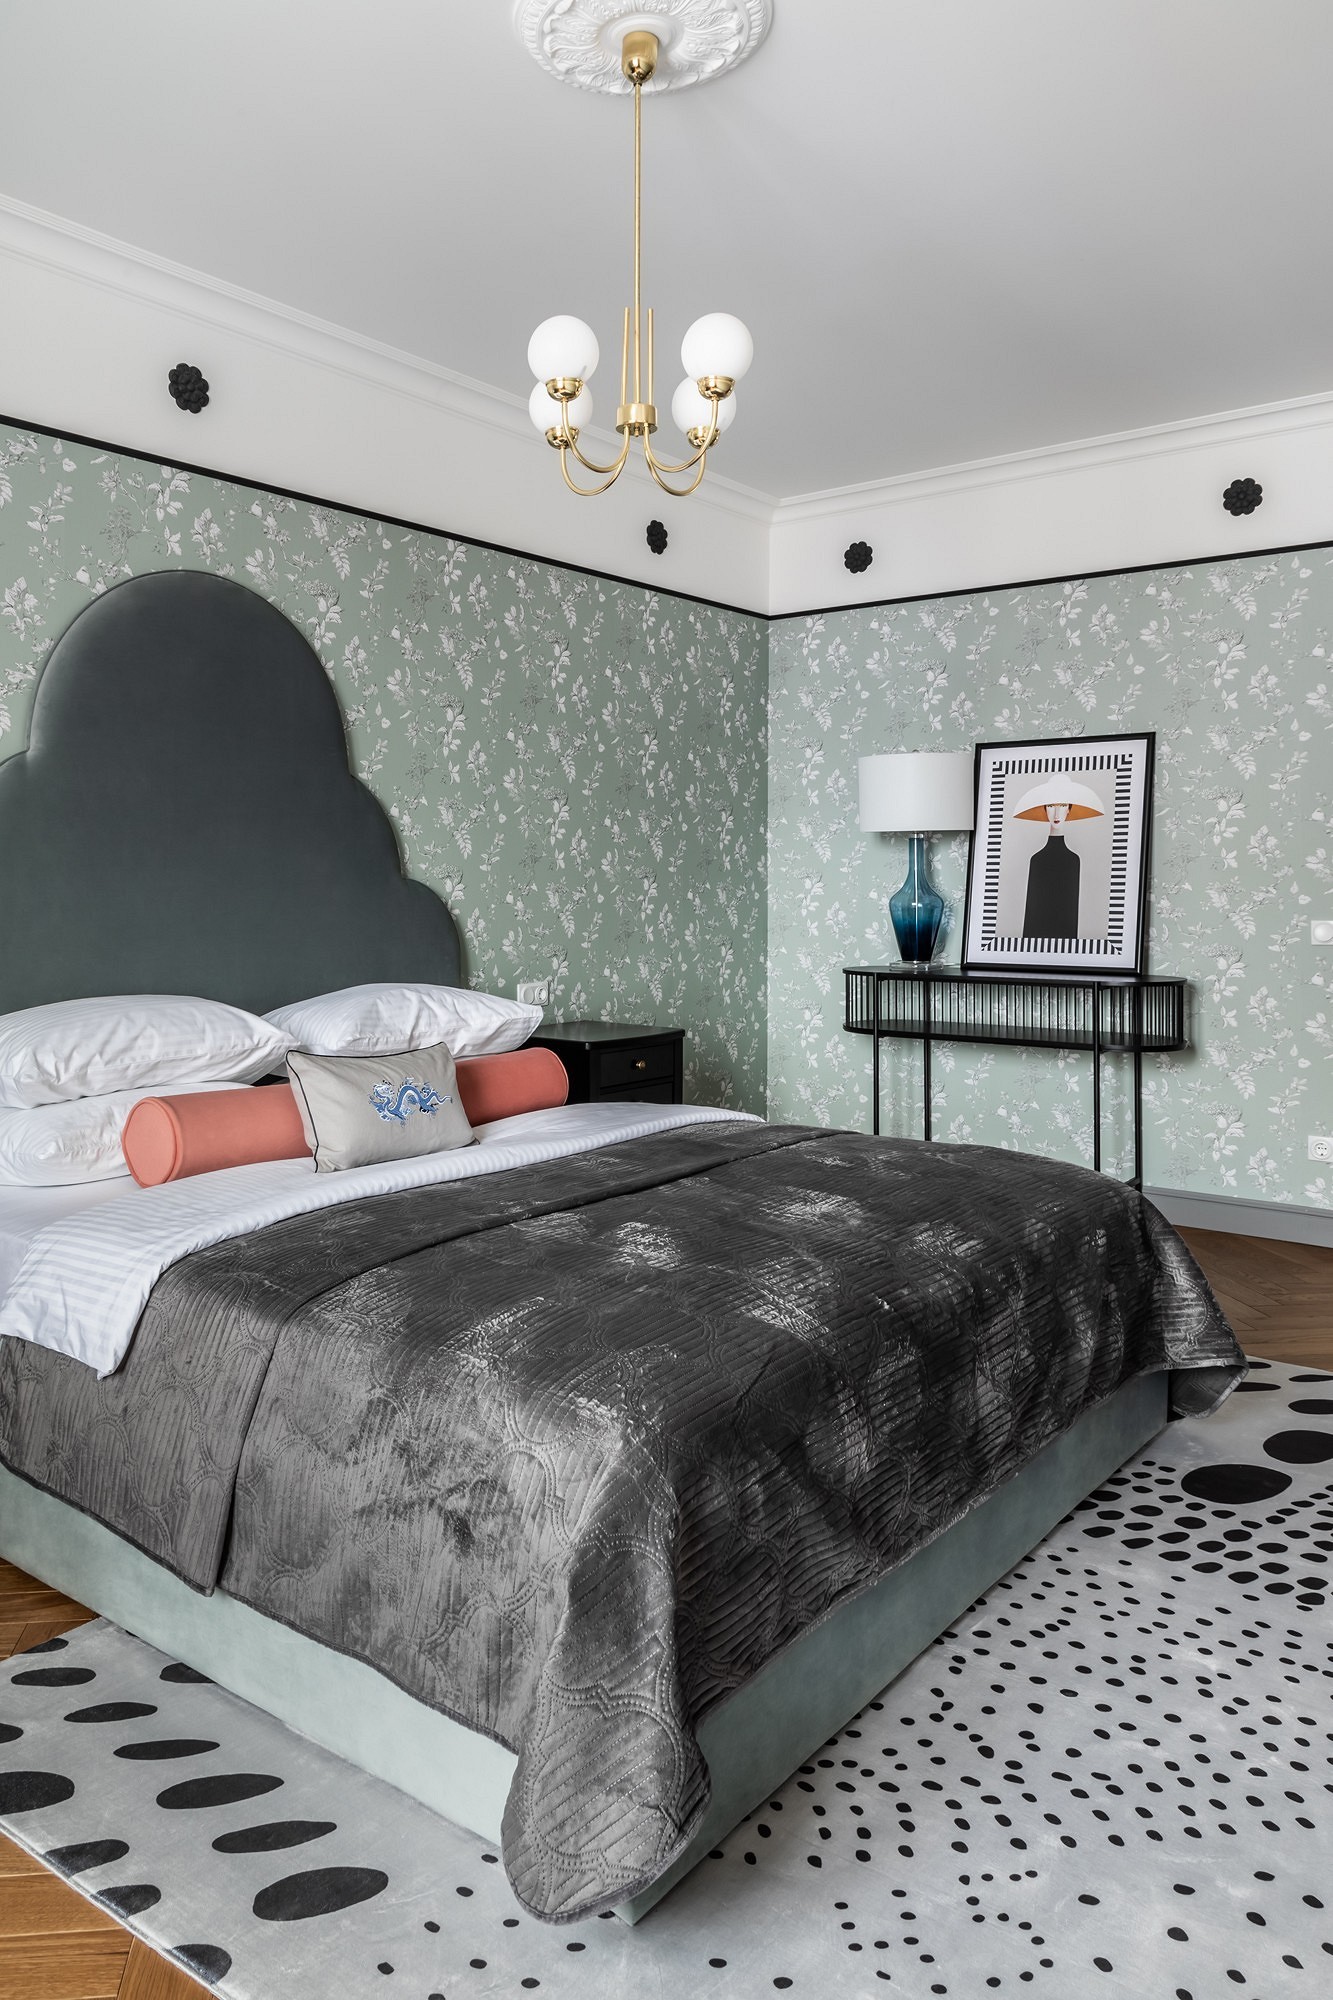 Какие обои для спальни выбирают дизайнеры? 6 потрясающих примеров13